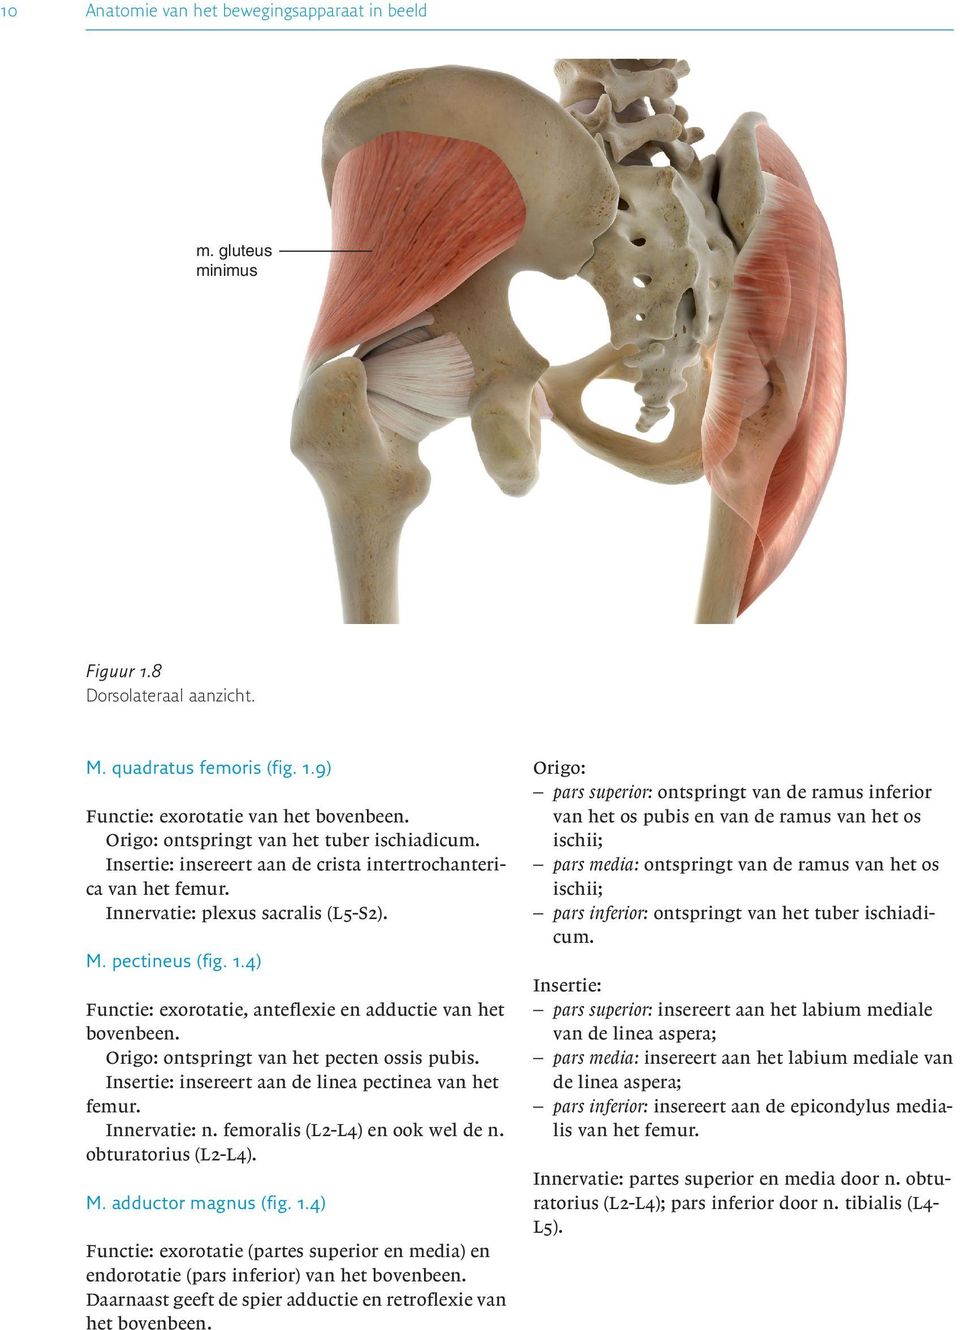 4) Functie: exorotatie, anteflexie en adductie van het Origo: ontspringt van het pecten ossis pubis. Insertie: insereert aan de linea pectinea van het femur. Innervatie: n.